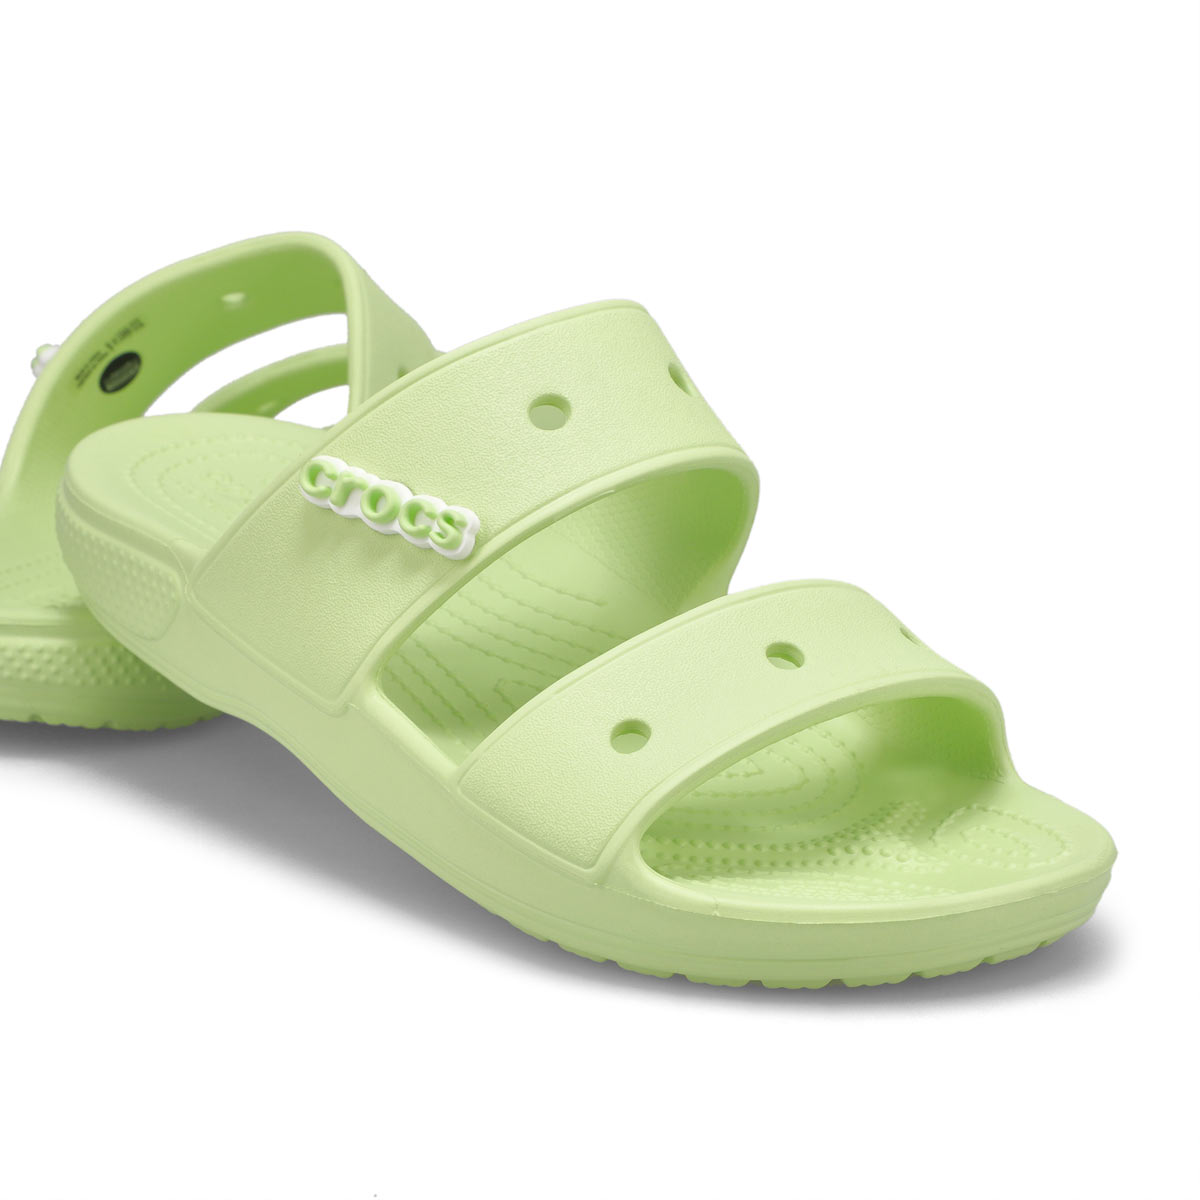 Crocs Women's Classic Crocs Slide Sandal - Pu | SoftMoc.com